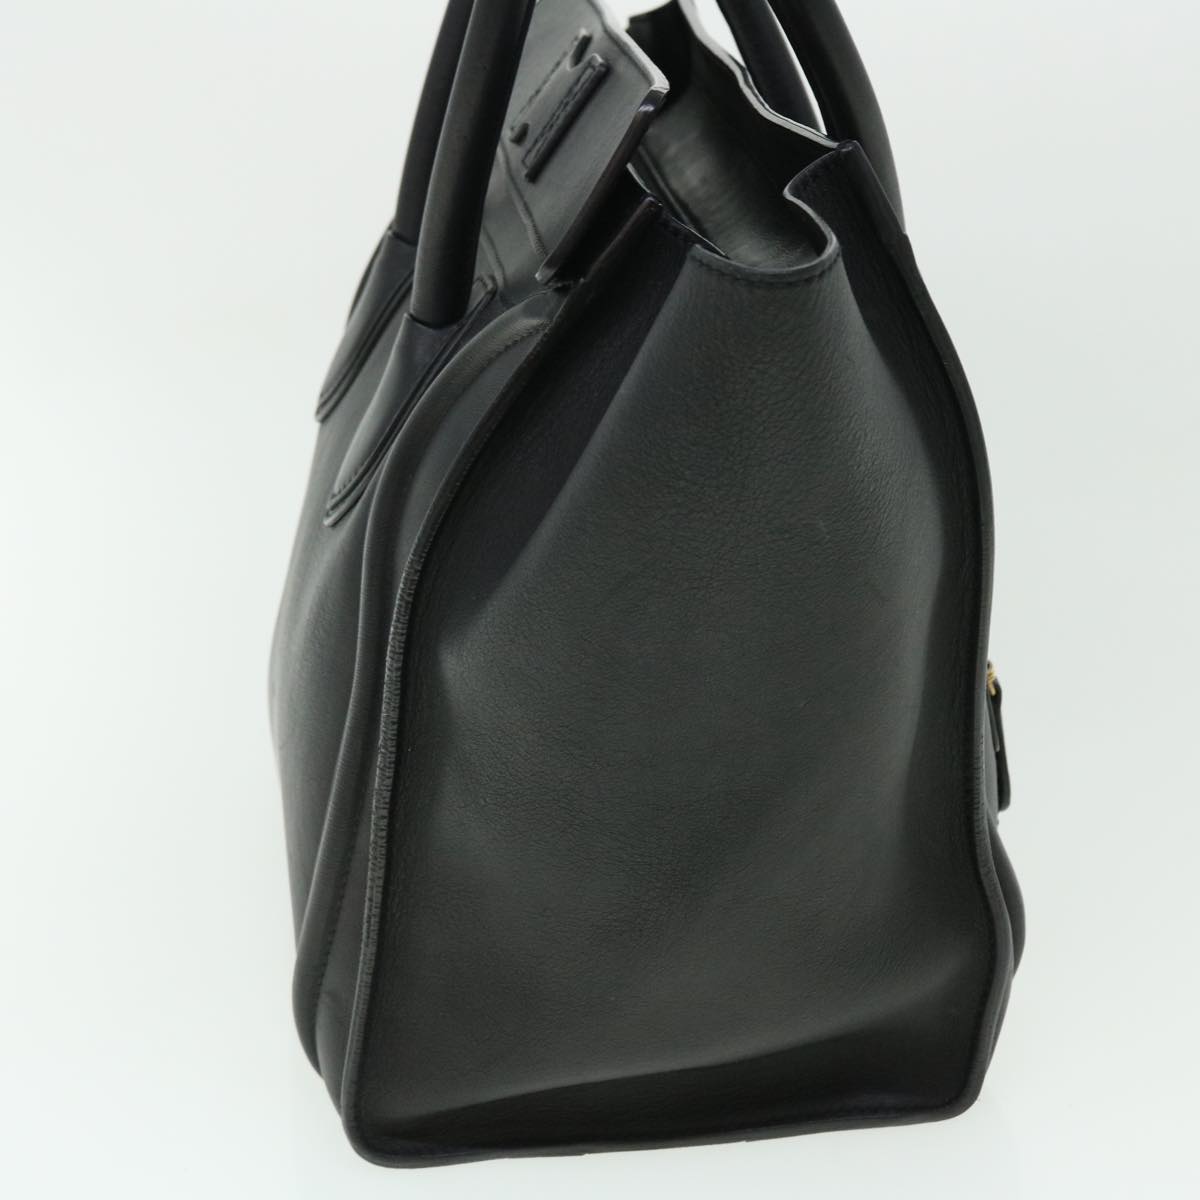 Celine Luggage Mini Hand Bag Leather Black Auth 51427